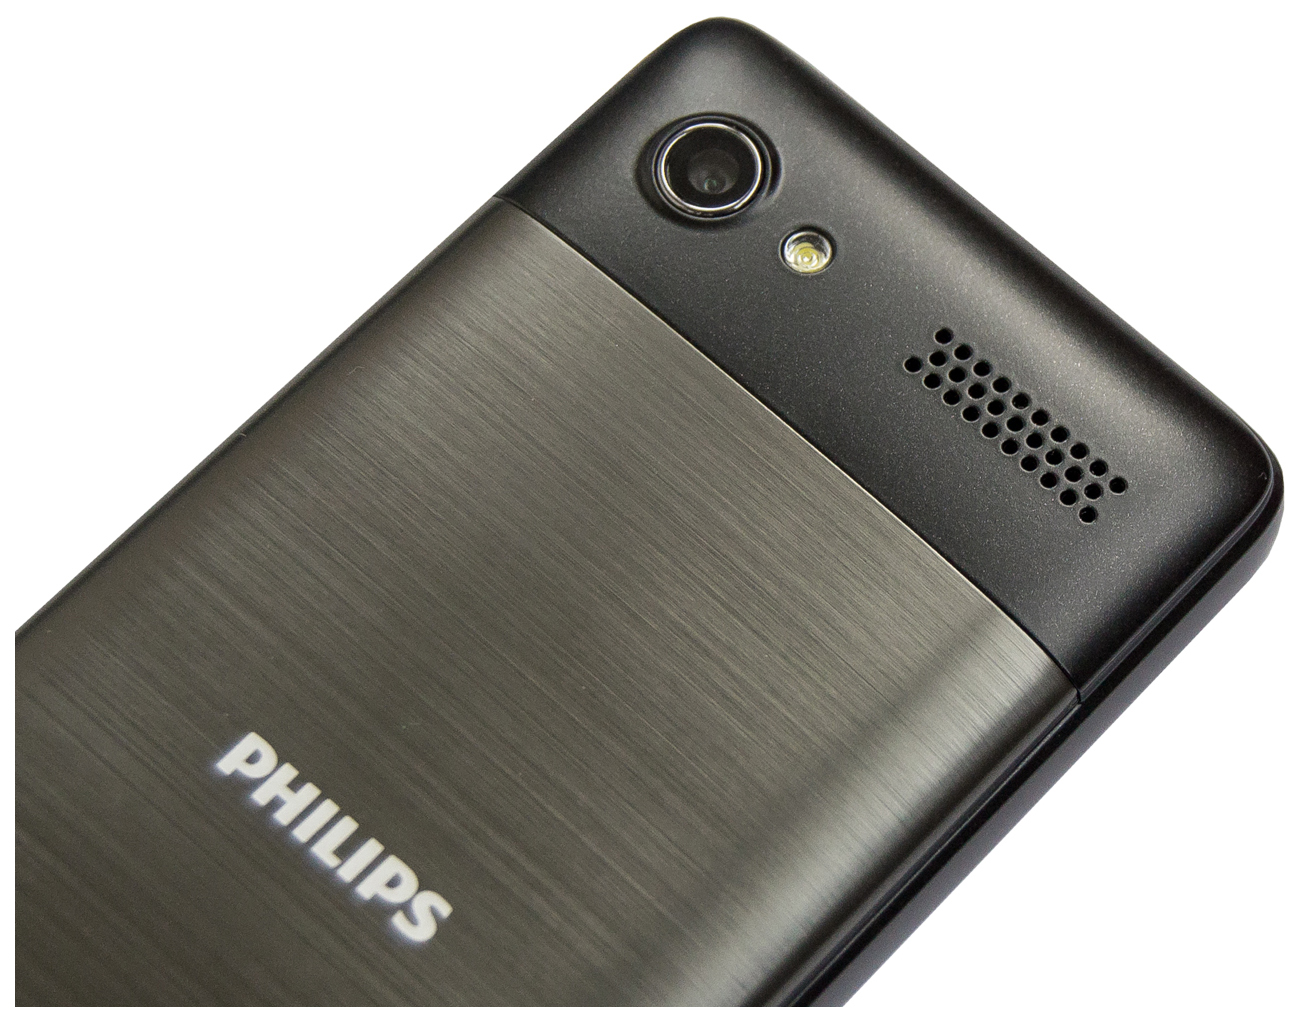 Philips Xenium e570. Philips Xenium Philips e570. Philips Xenium e570 Dual SIM Black. Philips Xenium e181.